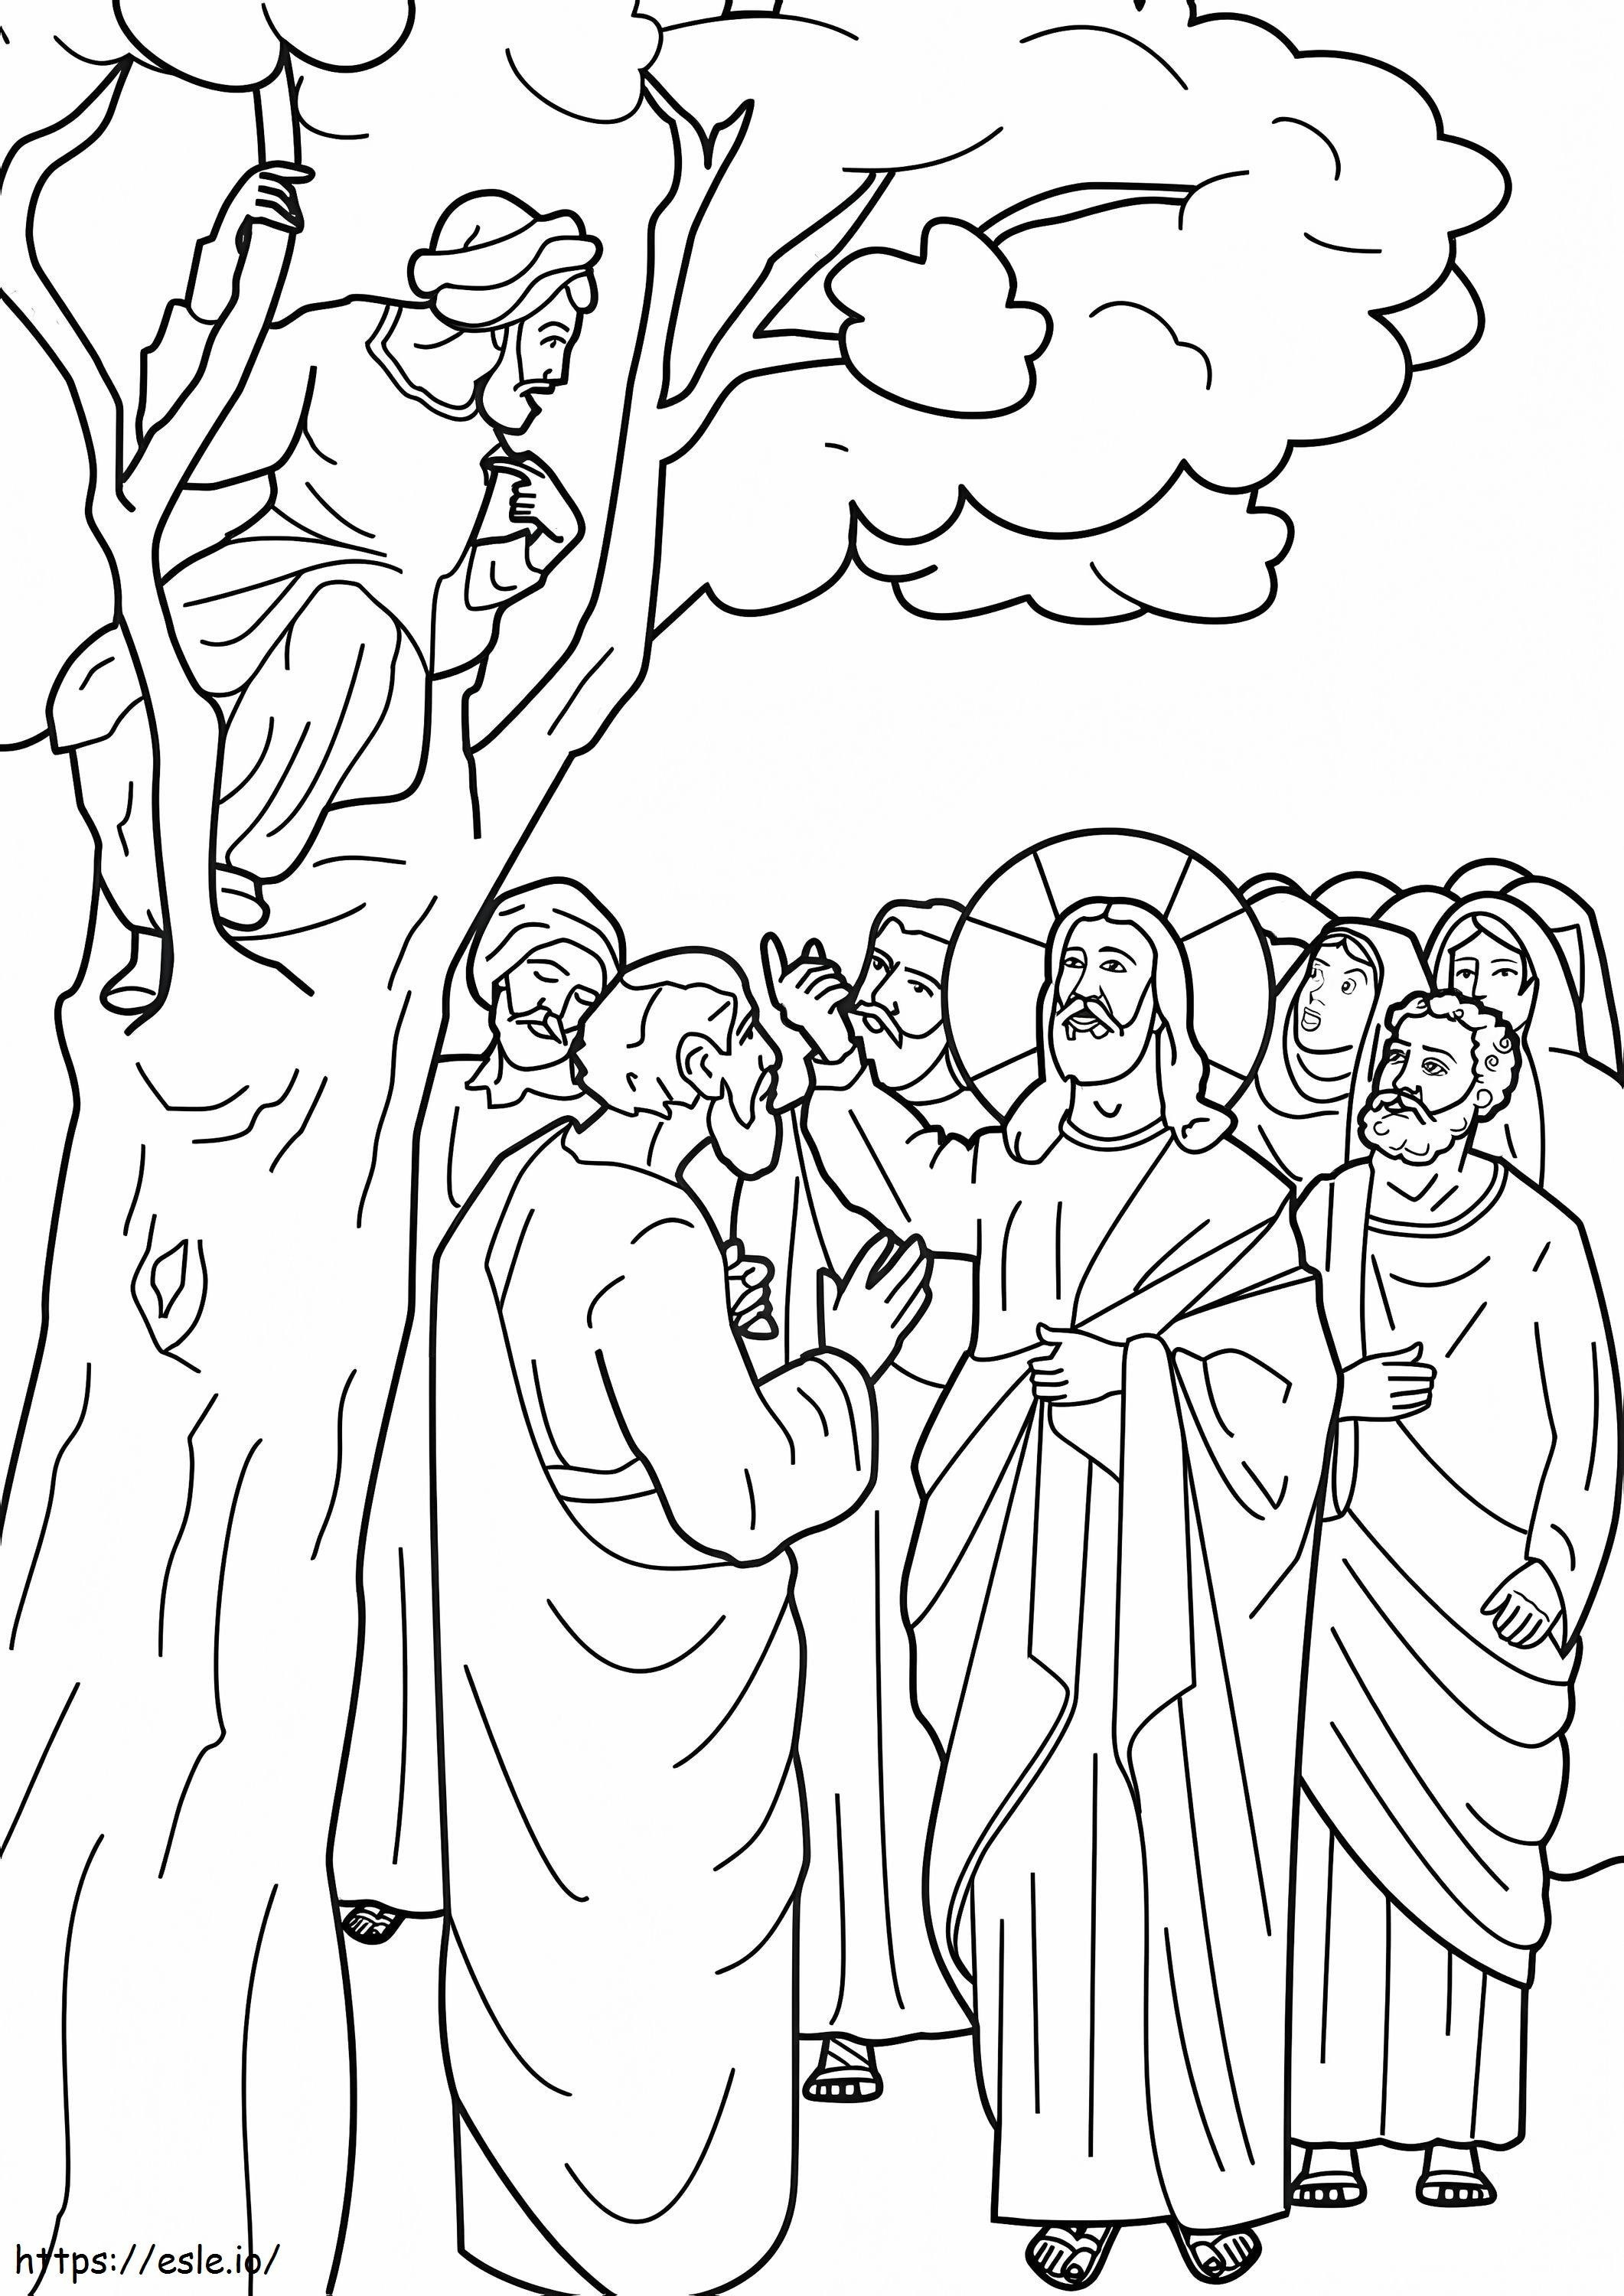 Zacchaeus 5 coloring page